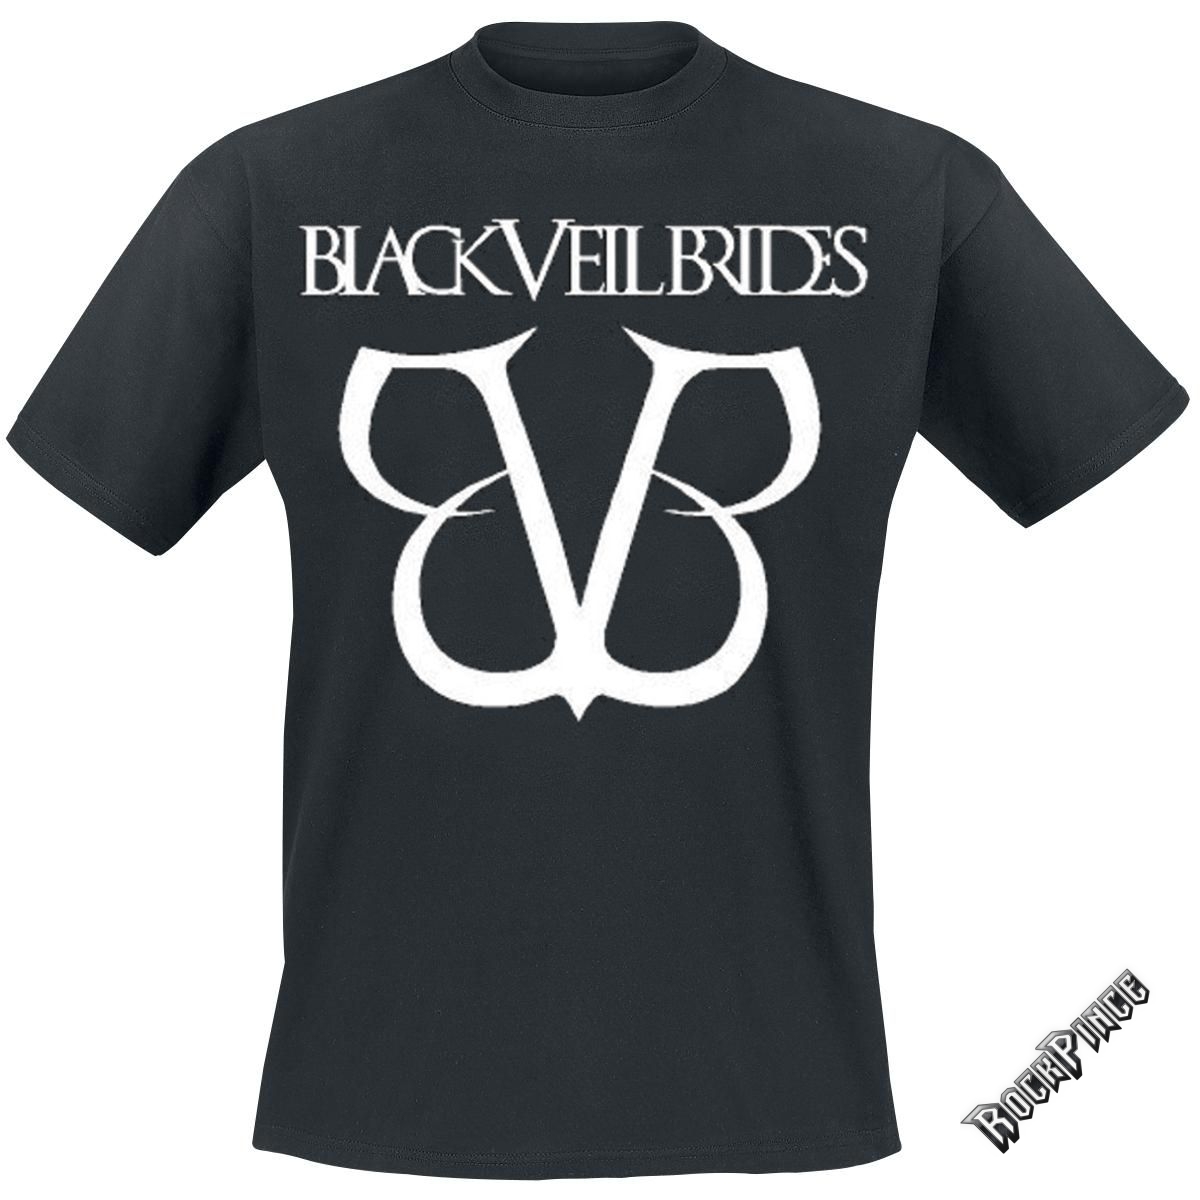 Black Veil Brides - BVB LOGO - UNISEX PÓLÓ